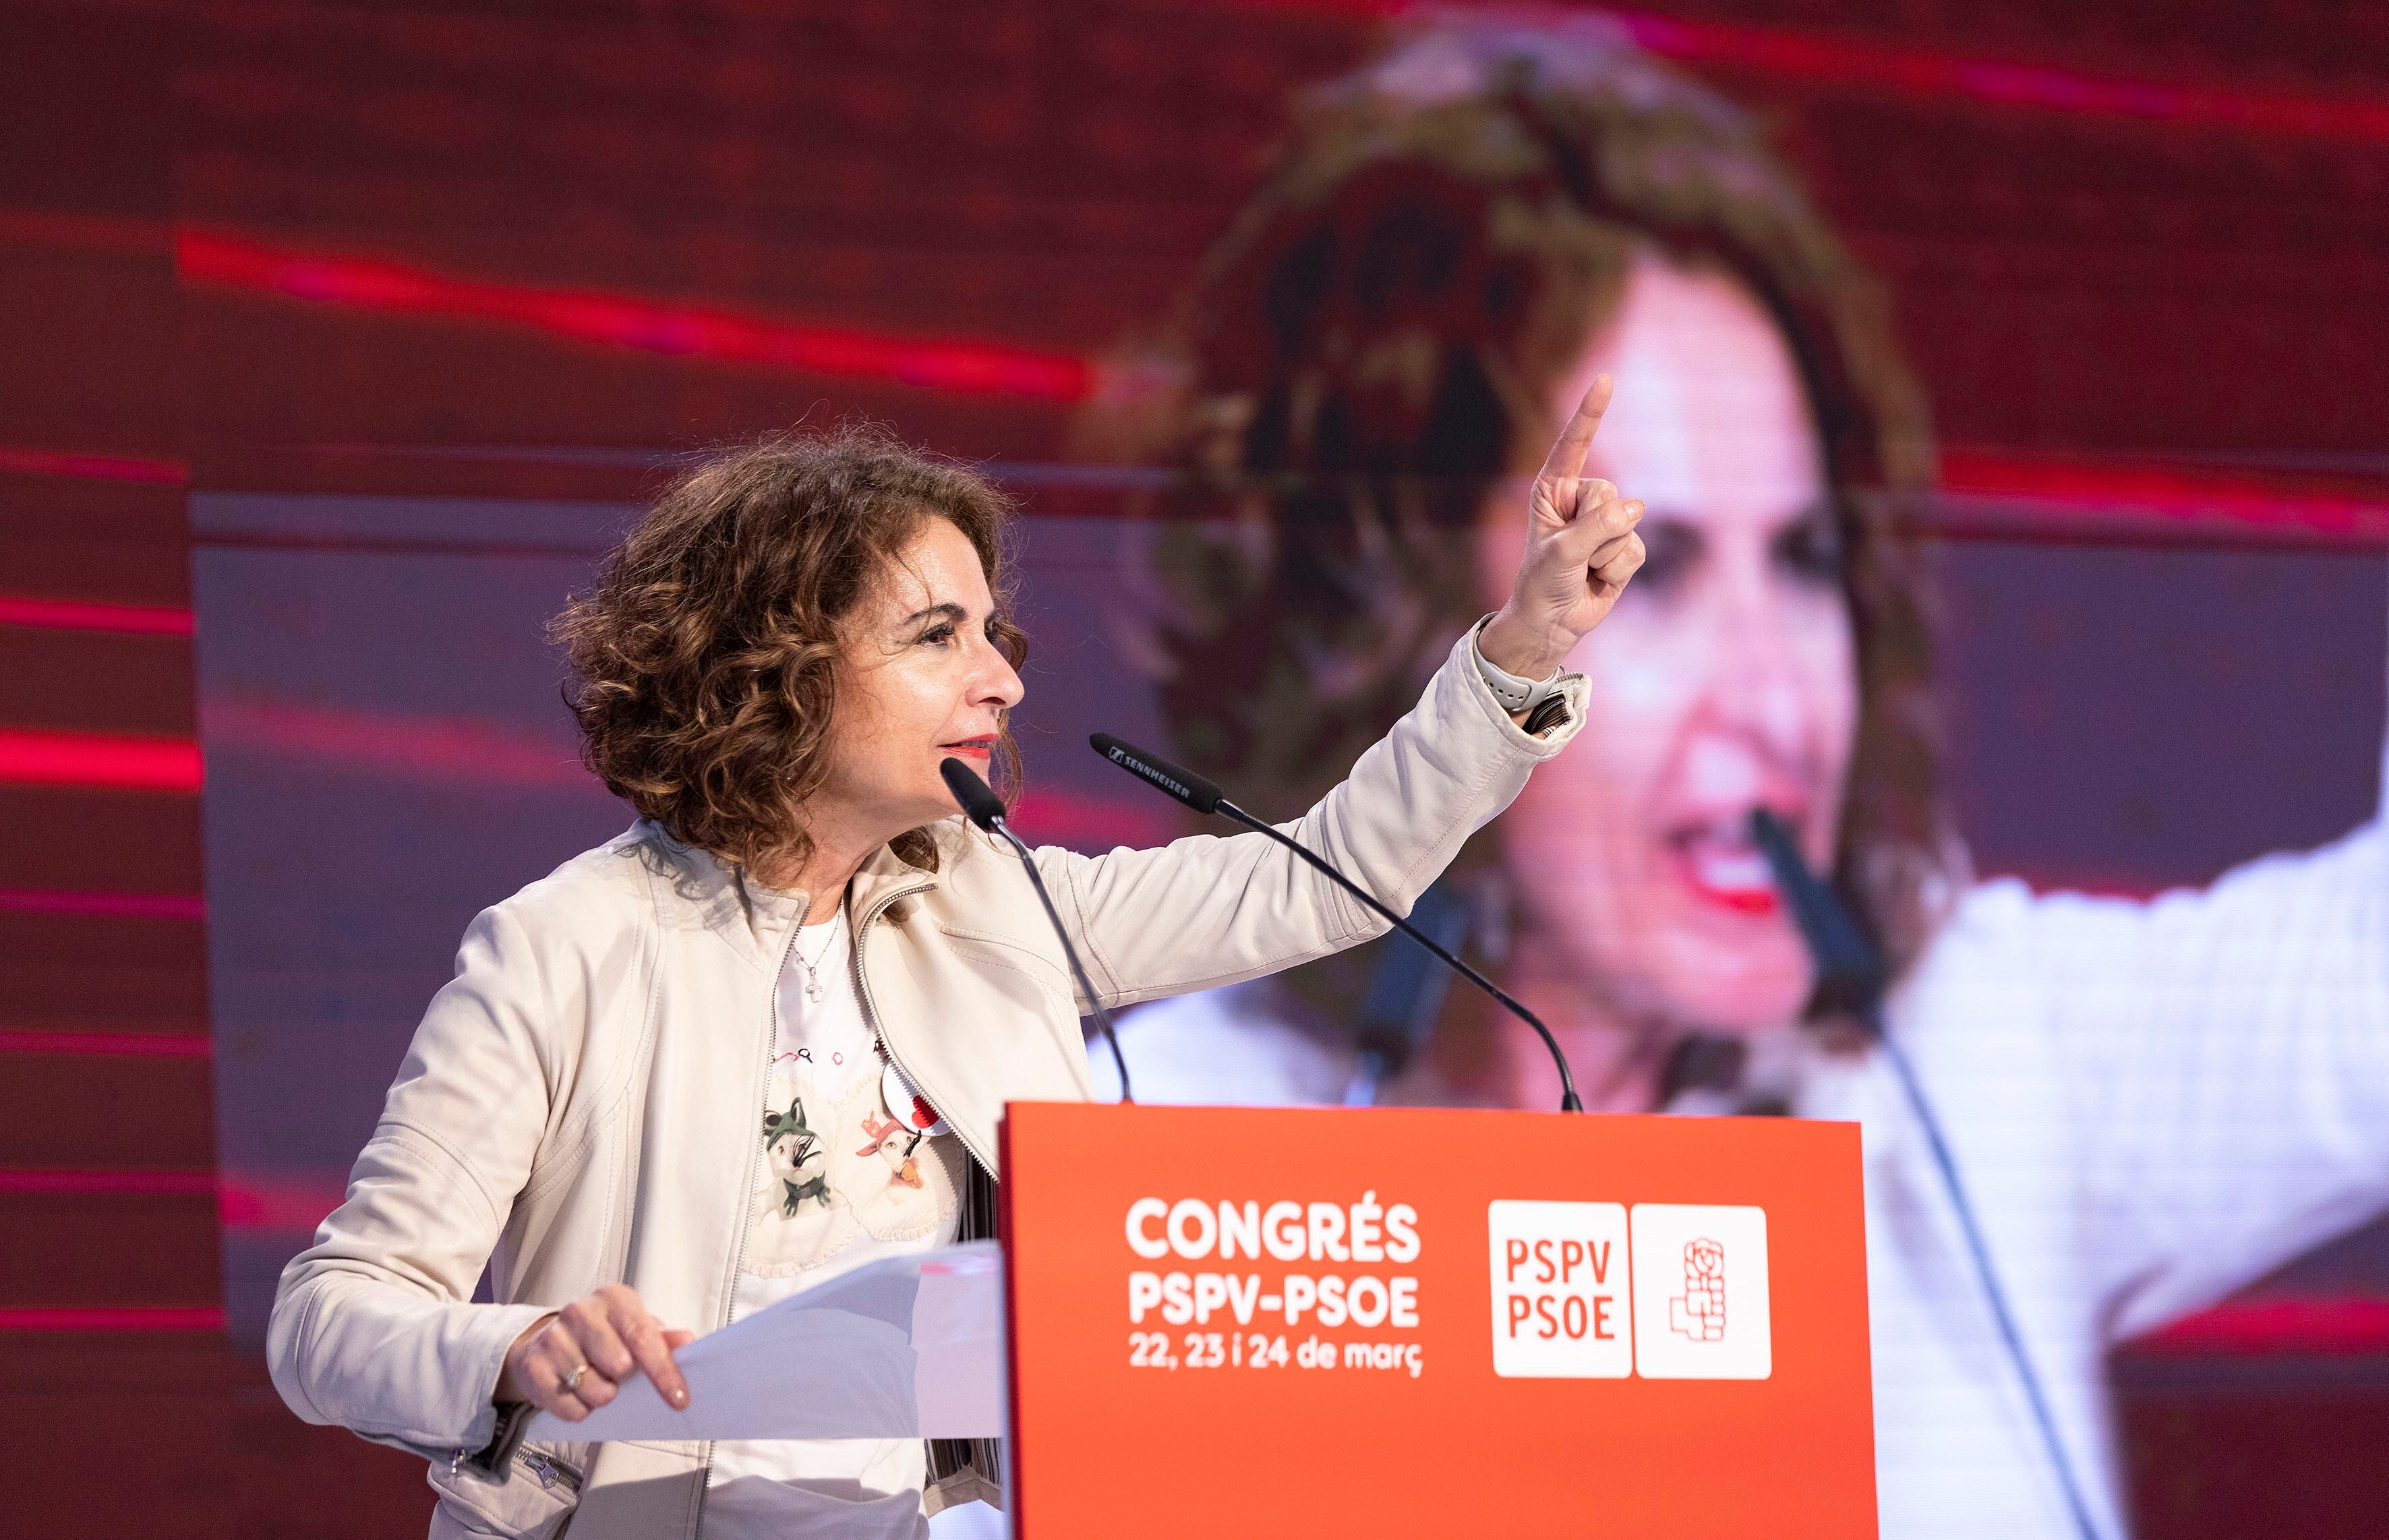 La vicepresidenta del Gobierno y vicesecretaria general del PSOE, María Jesús Montero, interviene en el congreso extraordinario de los socialistas valencianos este sábado en Benicàssim (Castellón).